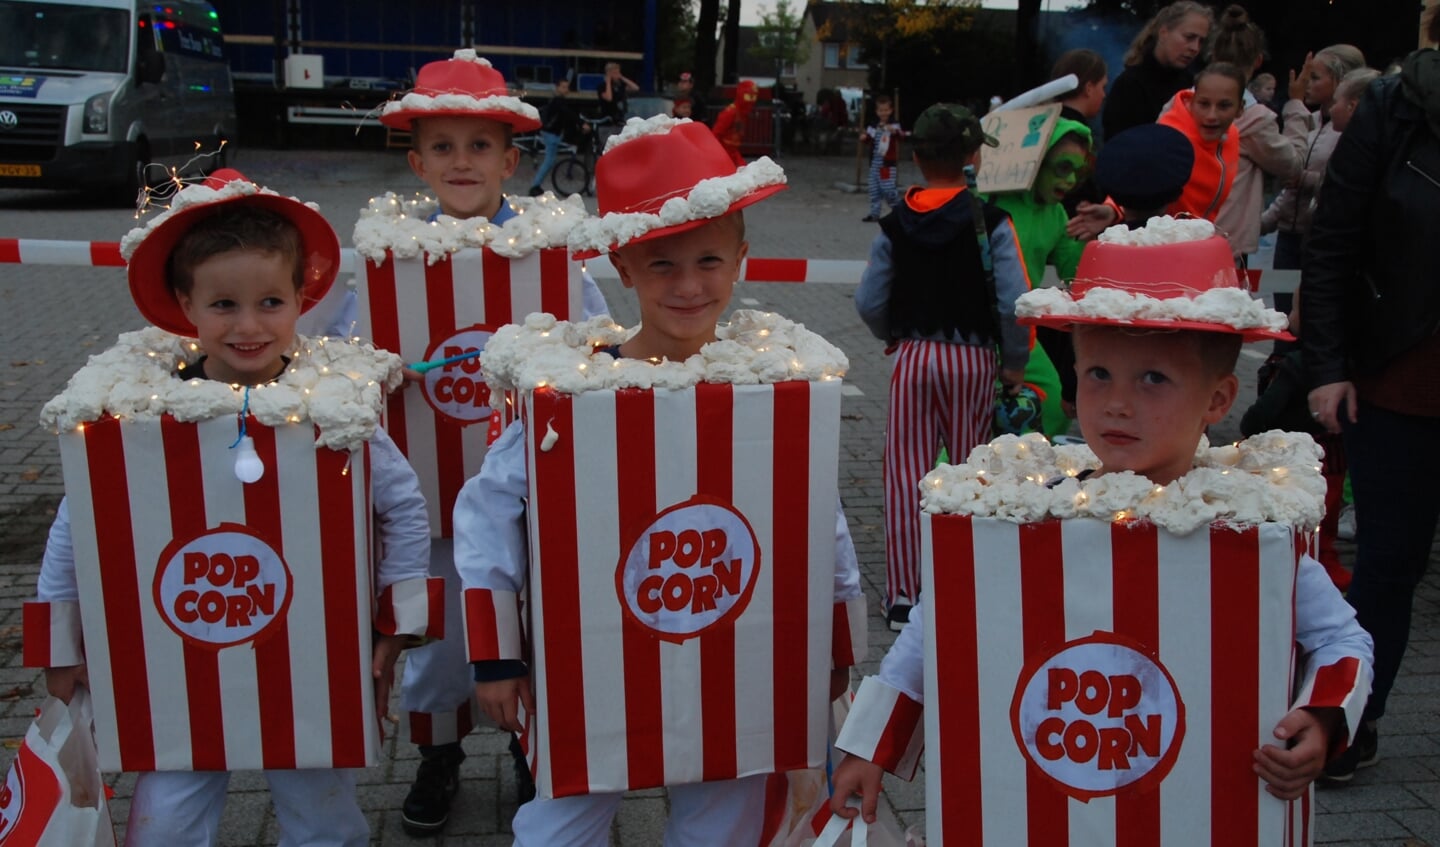 De Popcorn-mannetjes waren ook de origineelste.